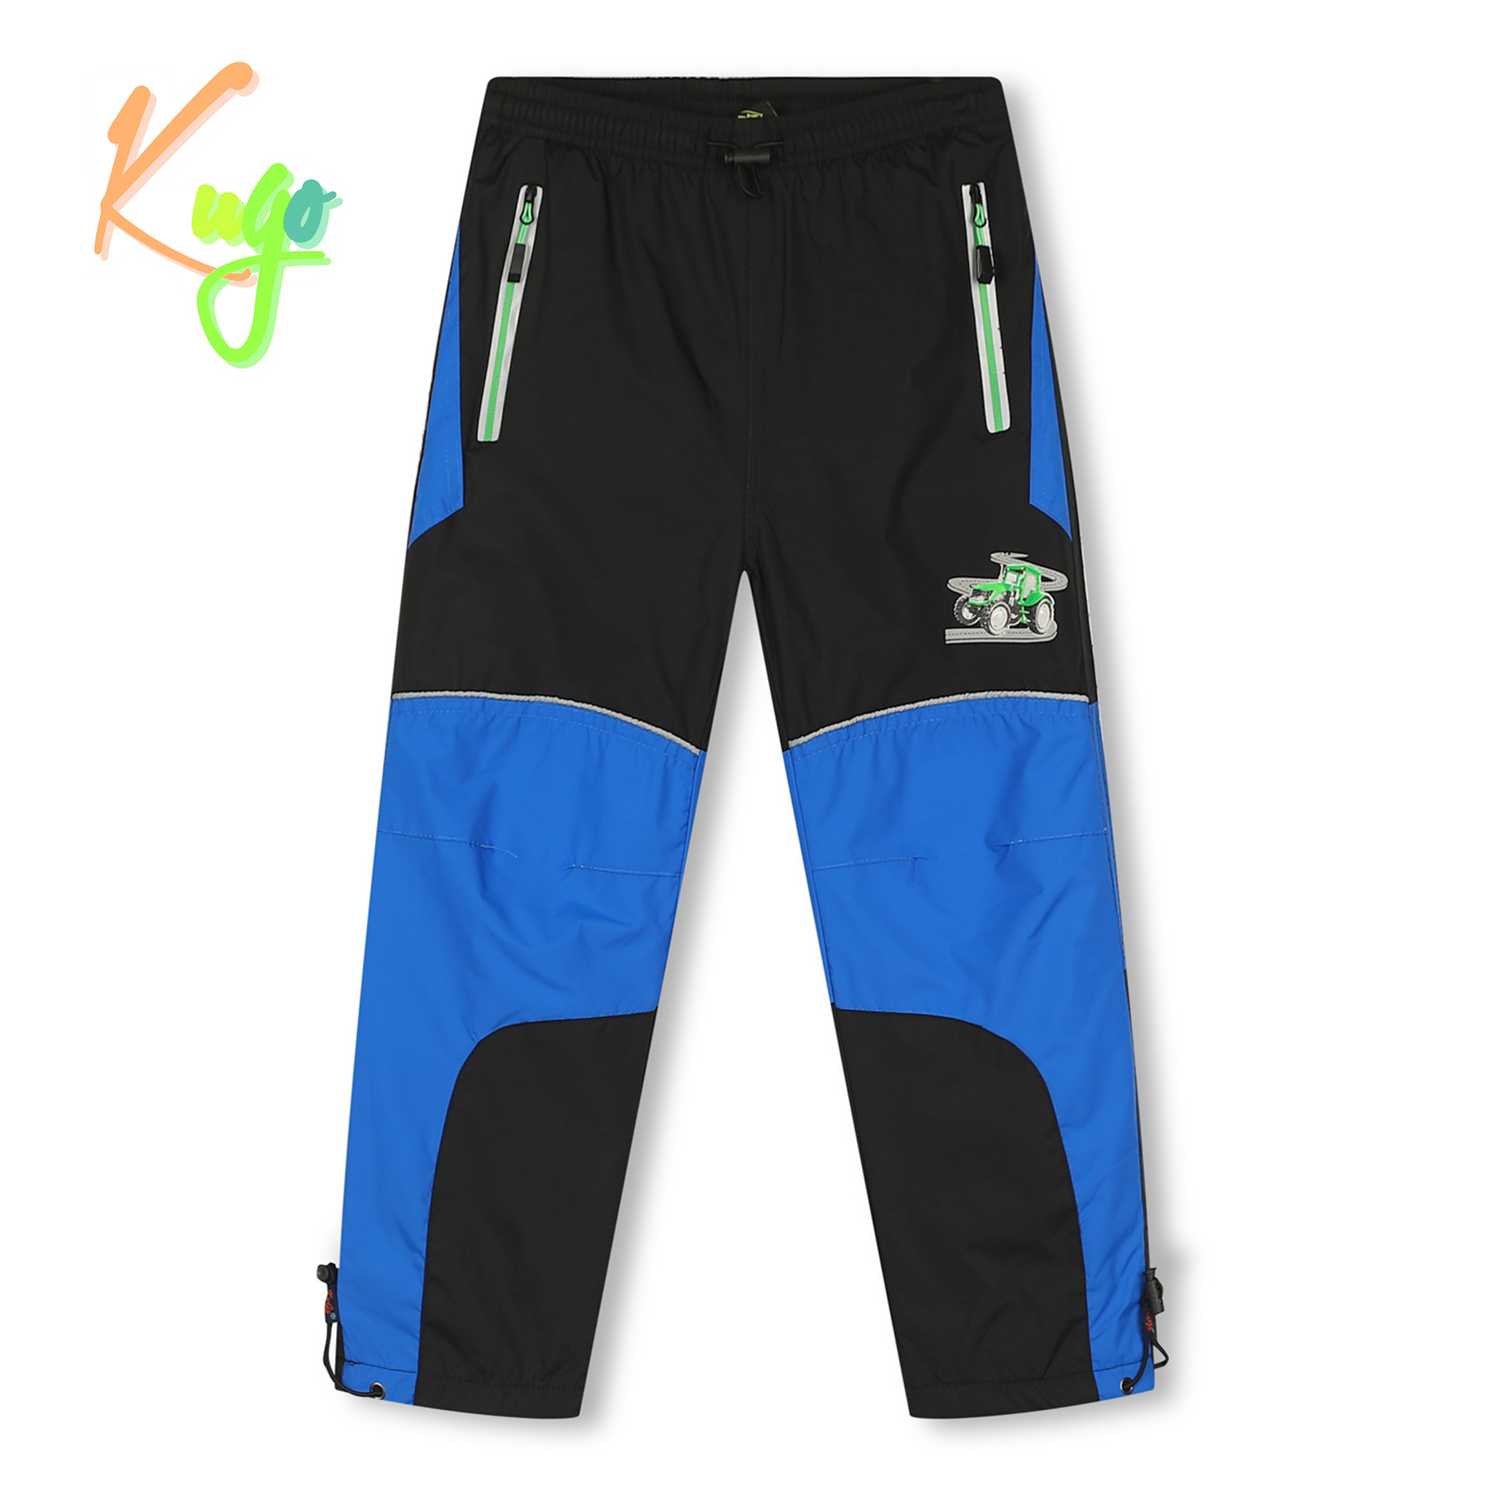 Chlapecké šusťákové kalhoty, zateplené - KUGO DK7126, černá/ zelený zip Barva: Černá, Velikost: 134